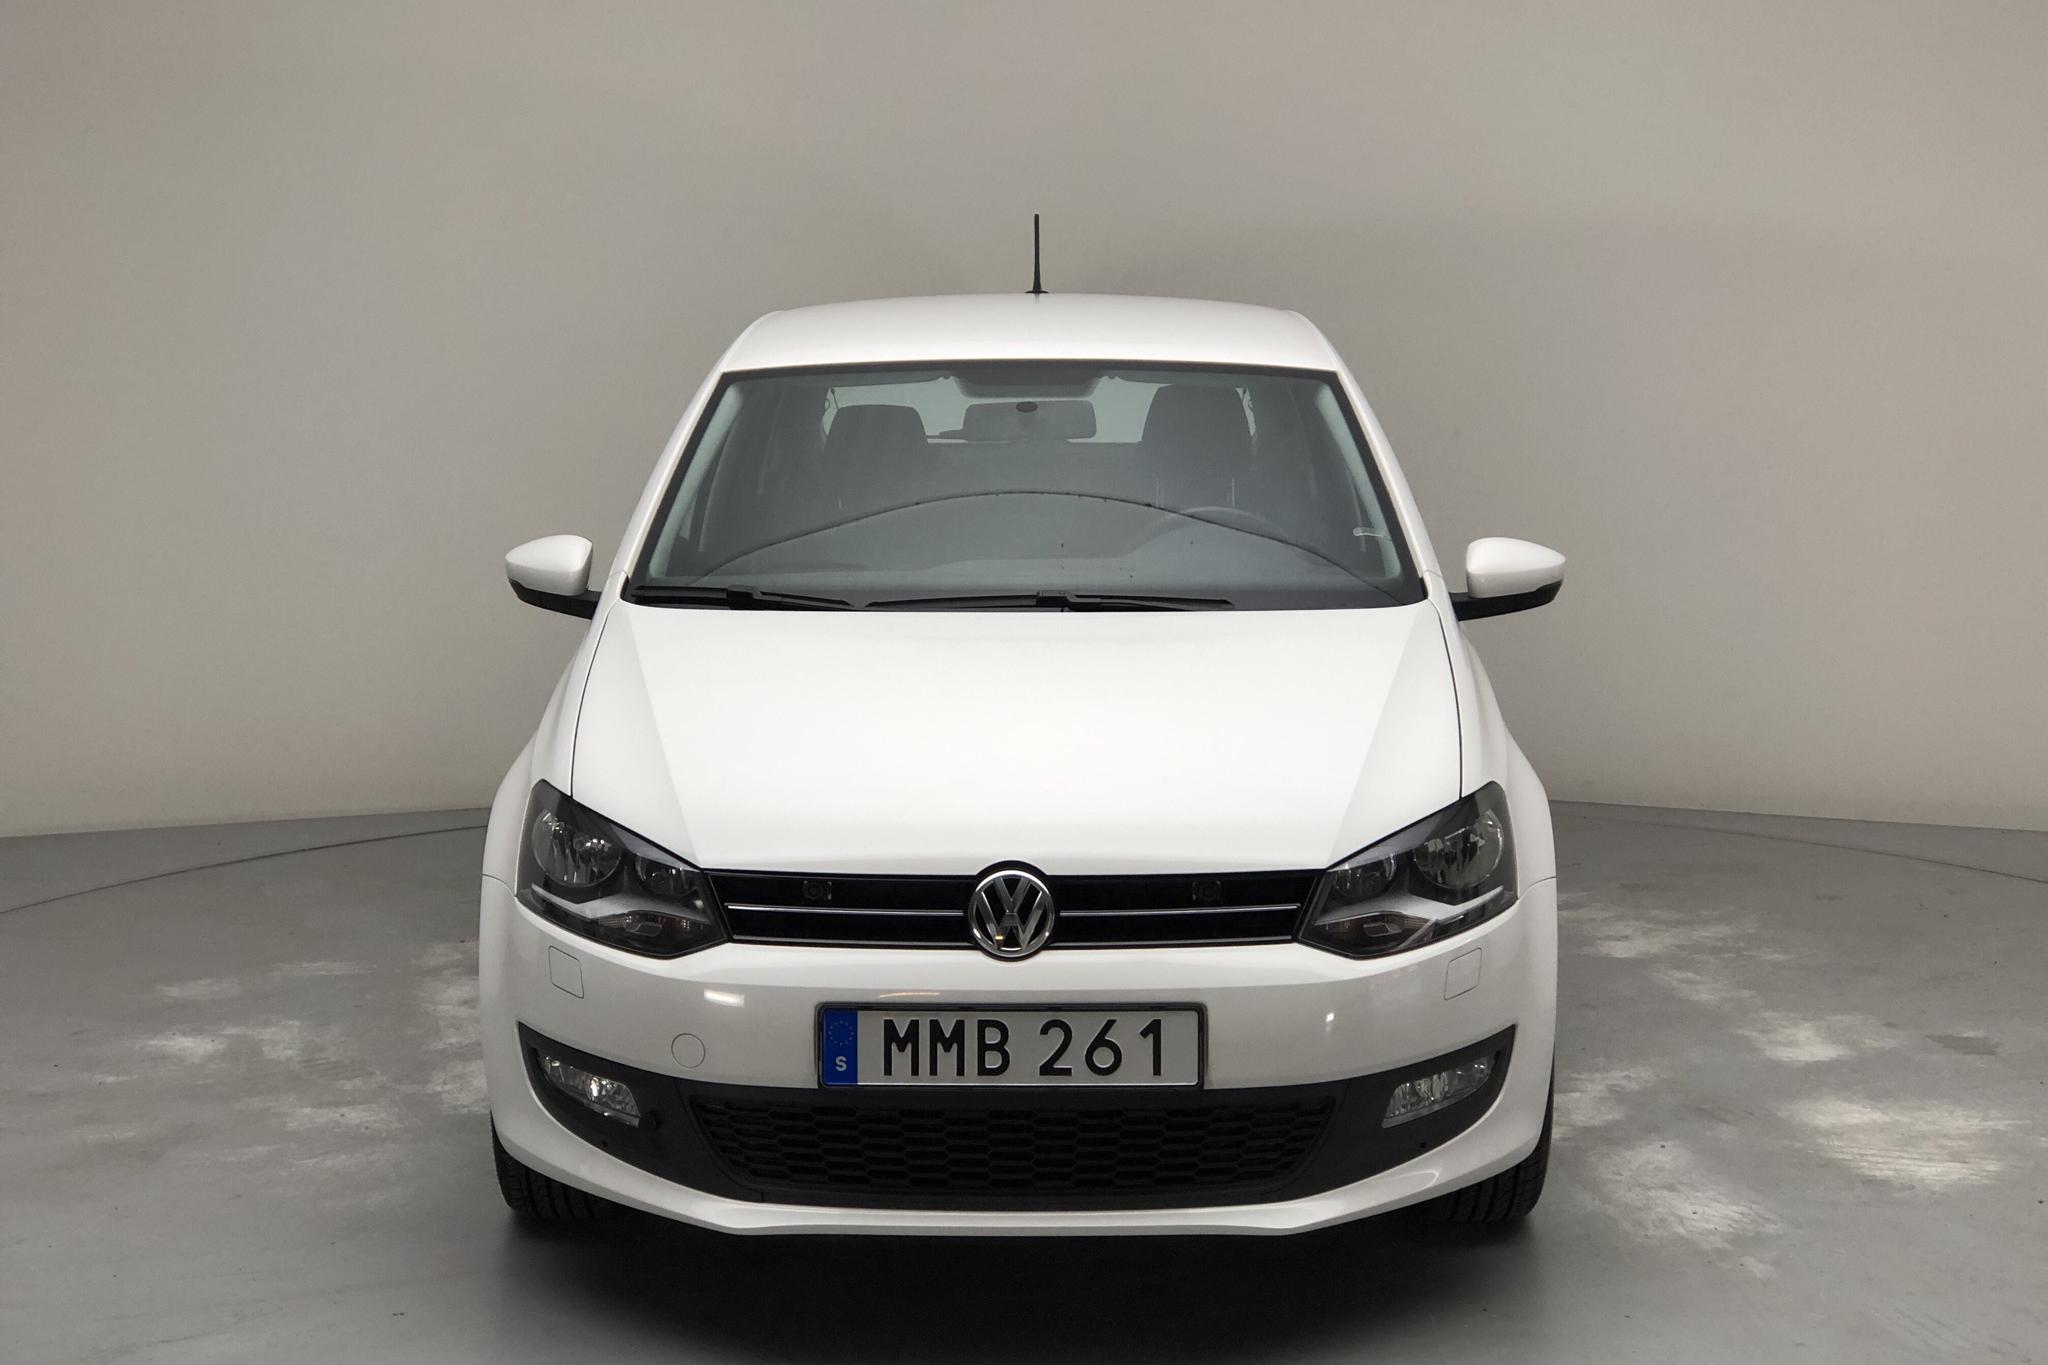 VW Polo 1.4 5dr (85hk) - 77 270 km - Automatic - white - 2014